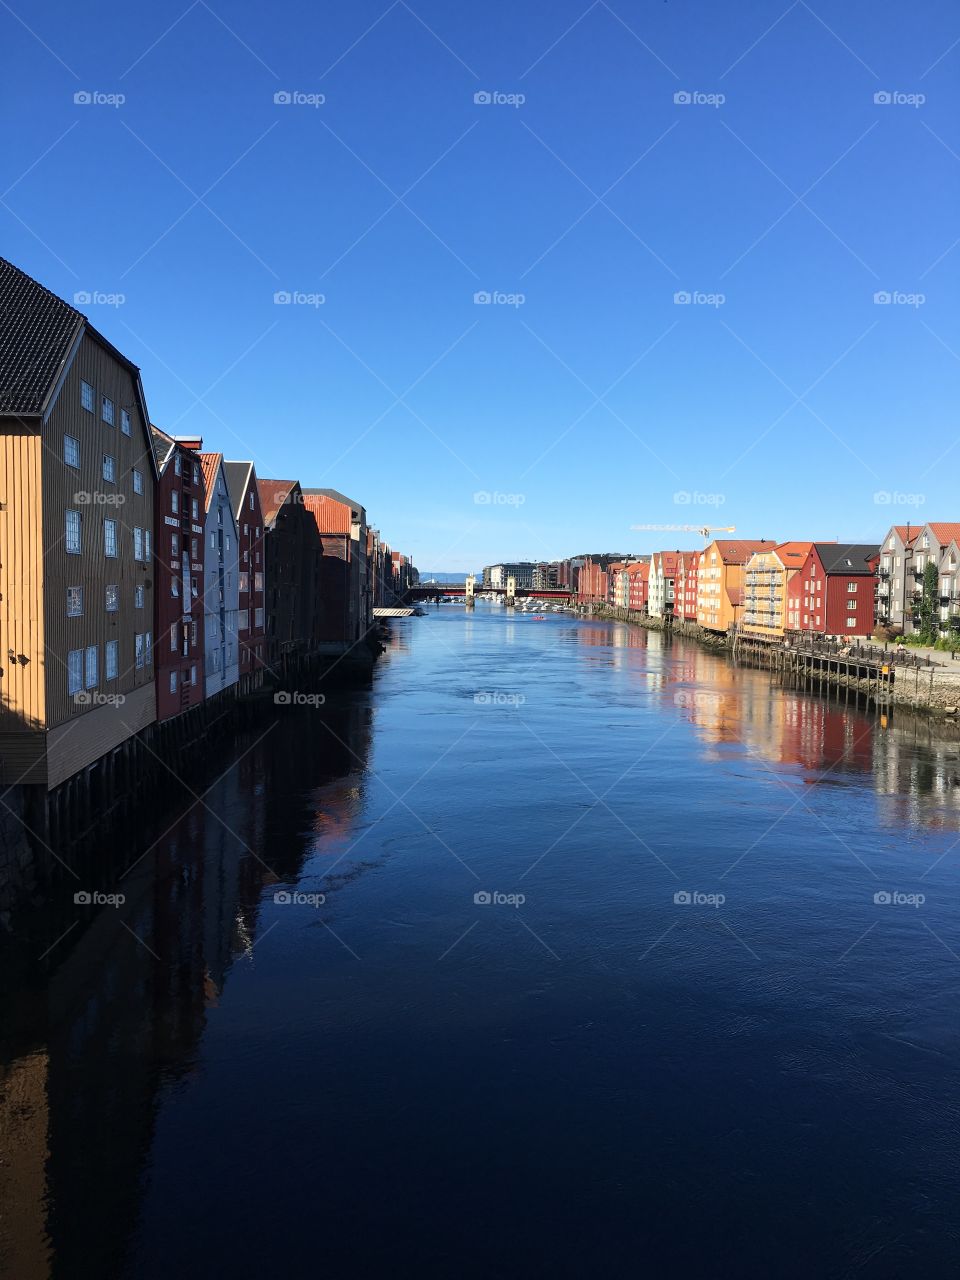 Port of Trondheim, Norway